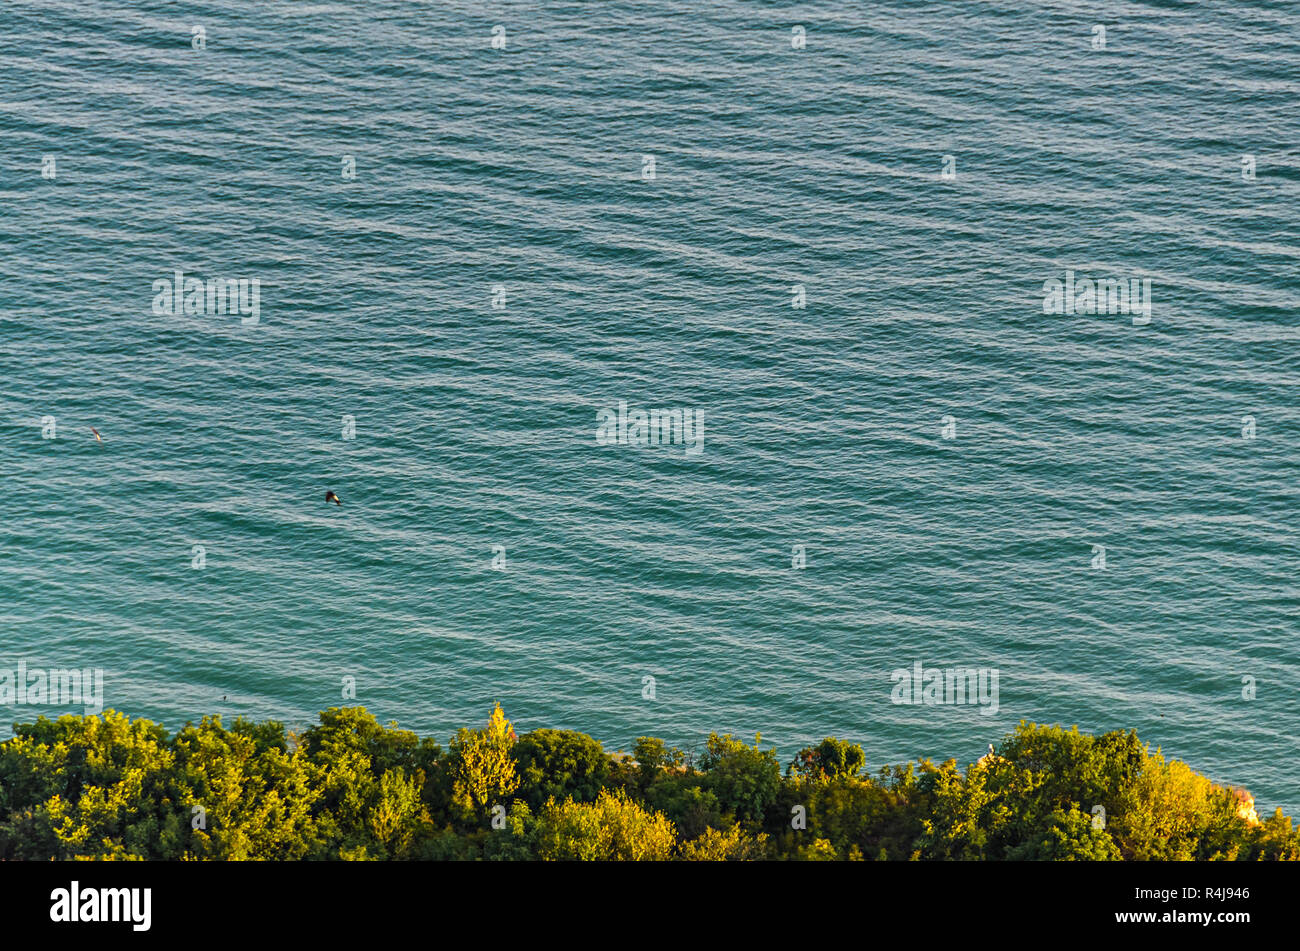 Green Thracian scogliere vicino blu chiare acque del Mar Nero, percorso roccioso sul mare. Foto Stock